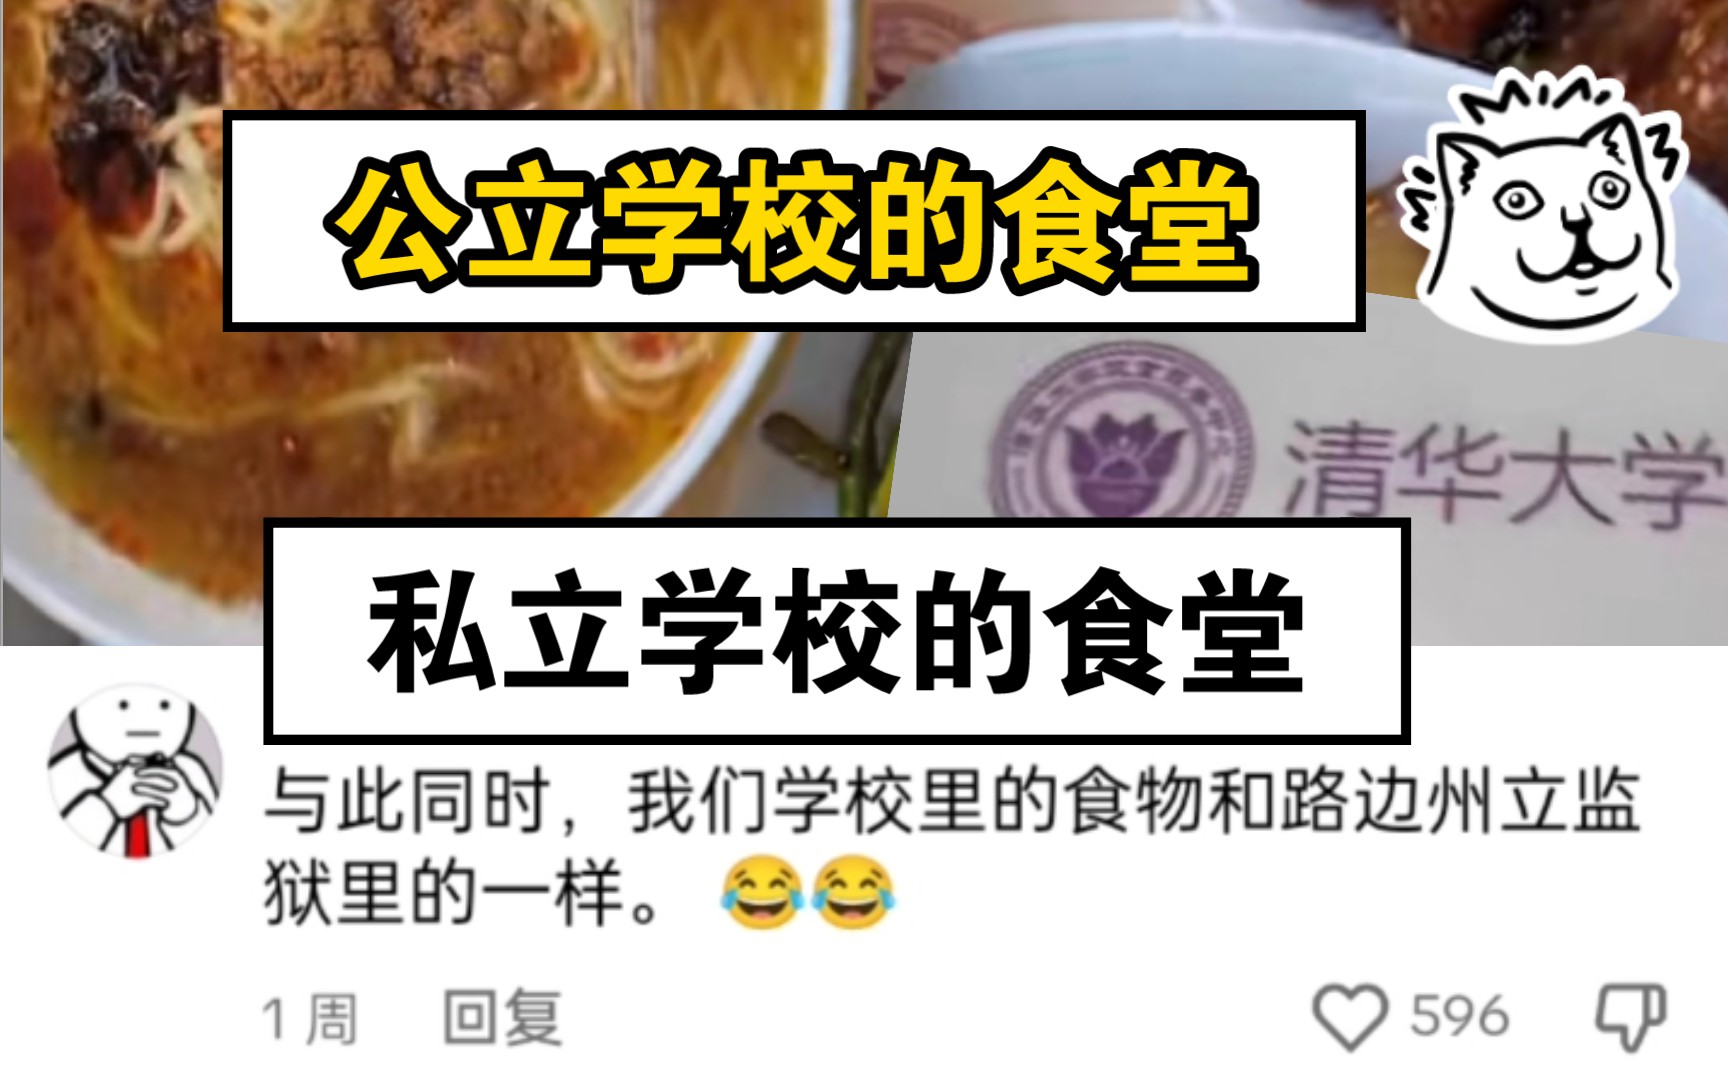 【TikTok】外国网友热议中国公立学校和韩国私立学校的食堂伙食